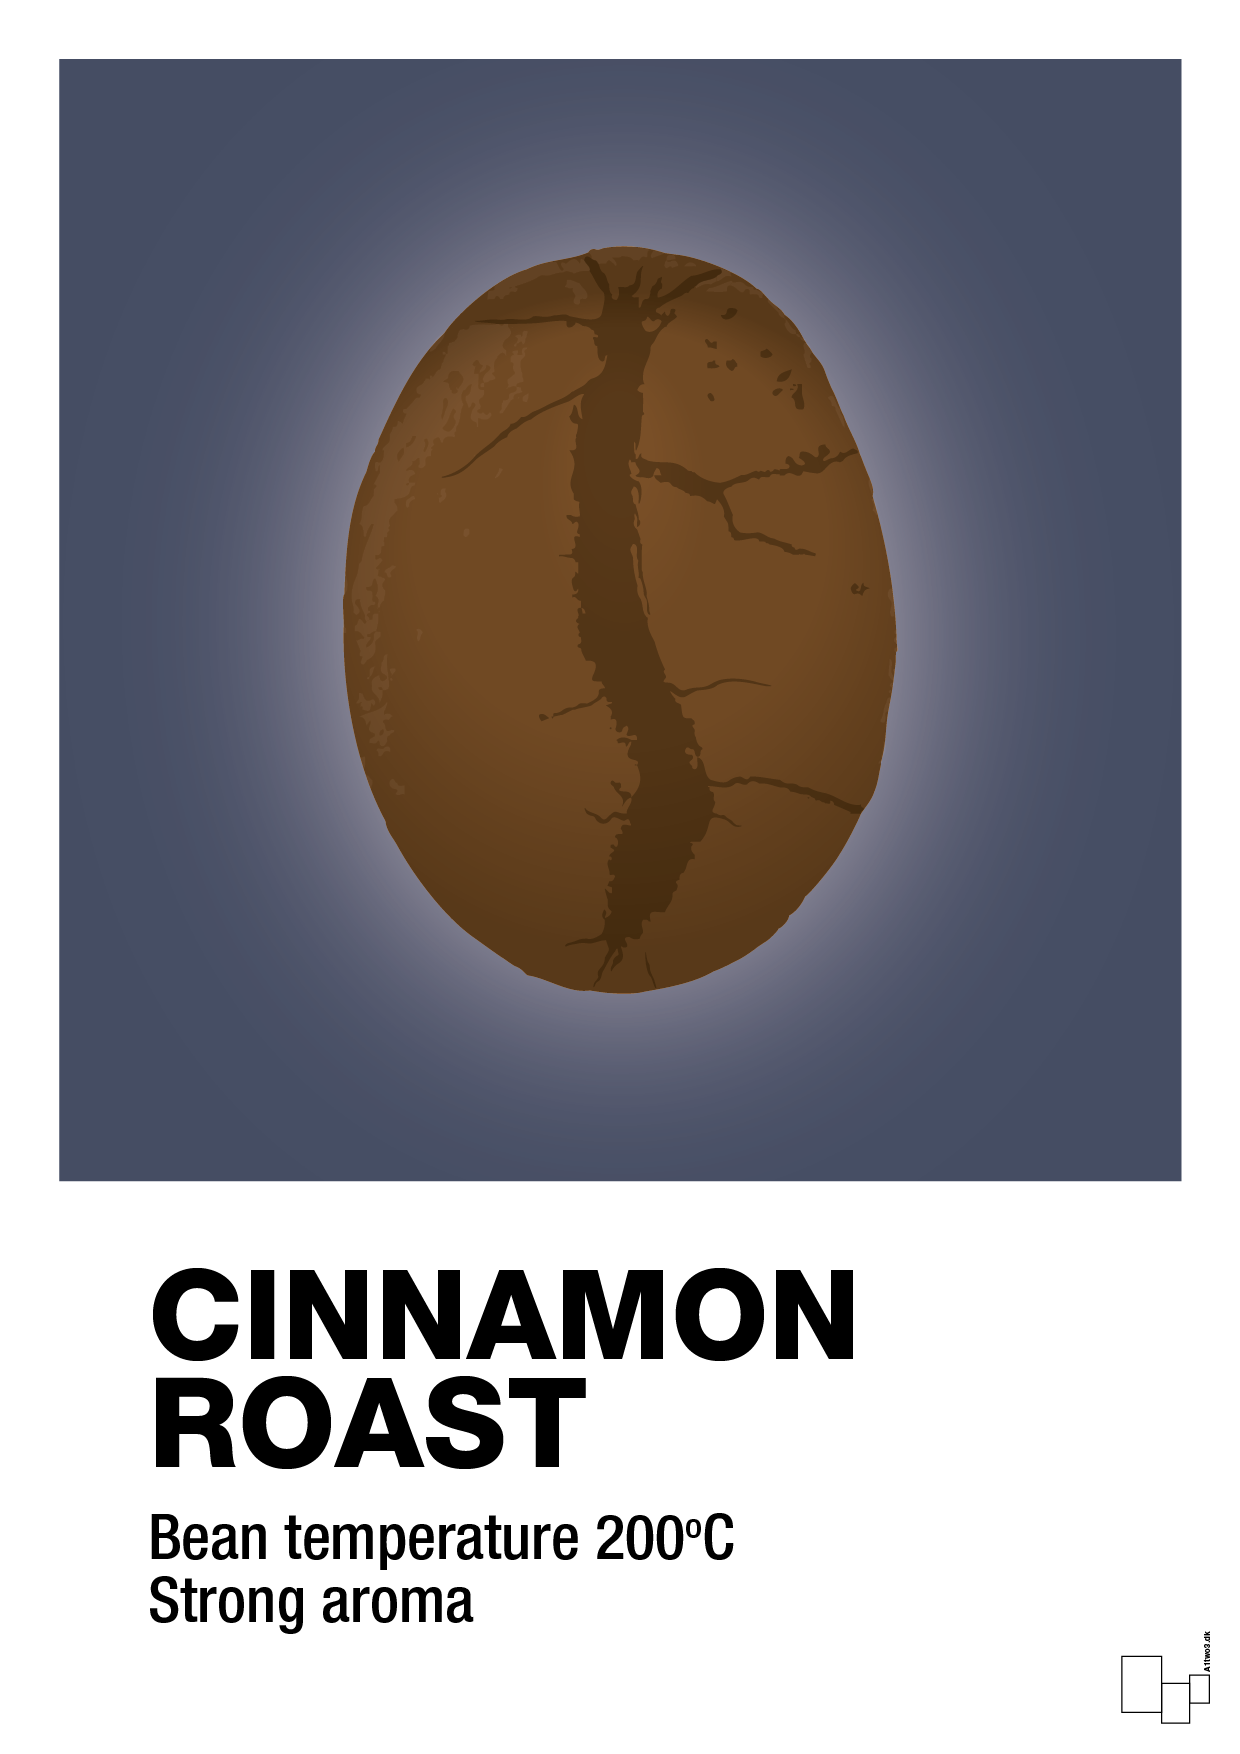 cinnamom roast - Plakat med Mad & Drikke i Petrol